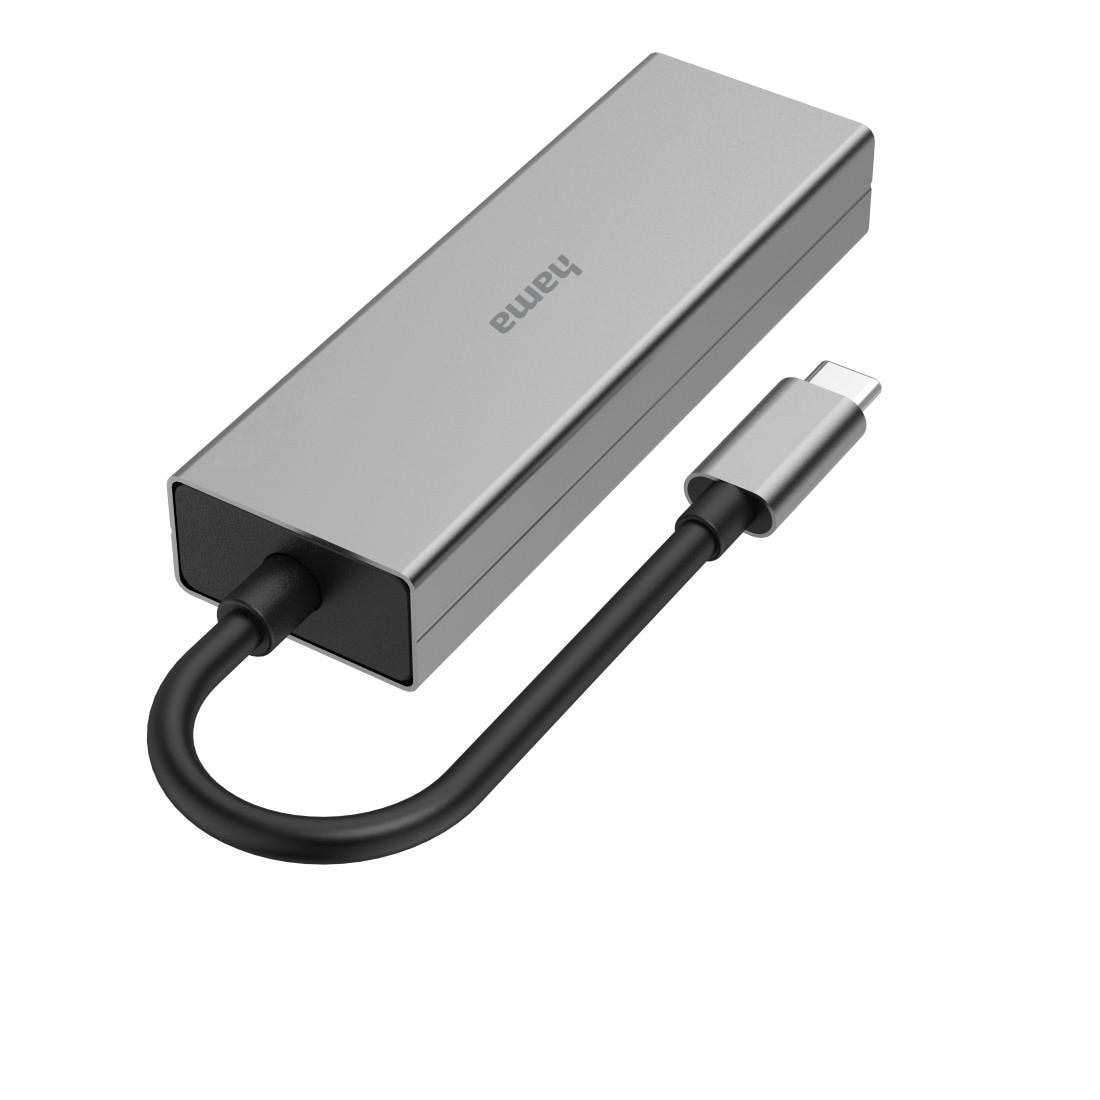 Hama USB-Adapter »USB-C-Hub, 4 Ports, 2x USB-A, 2x USB-C, USB 3.2 Gen1, 5 Gbit/s«, USB-C zu USB 3.2 Gen 1 Type A-USB-C, 15 cm